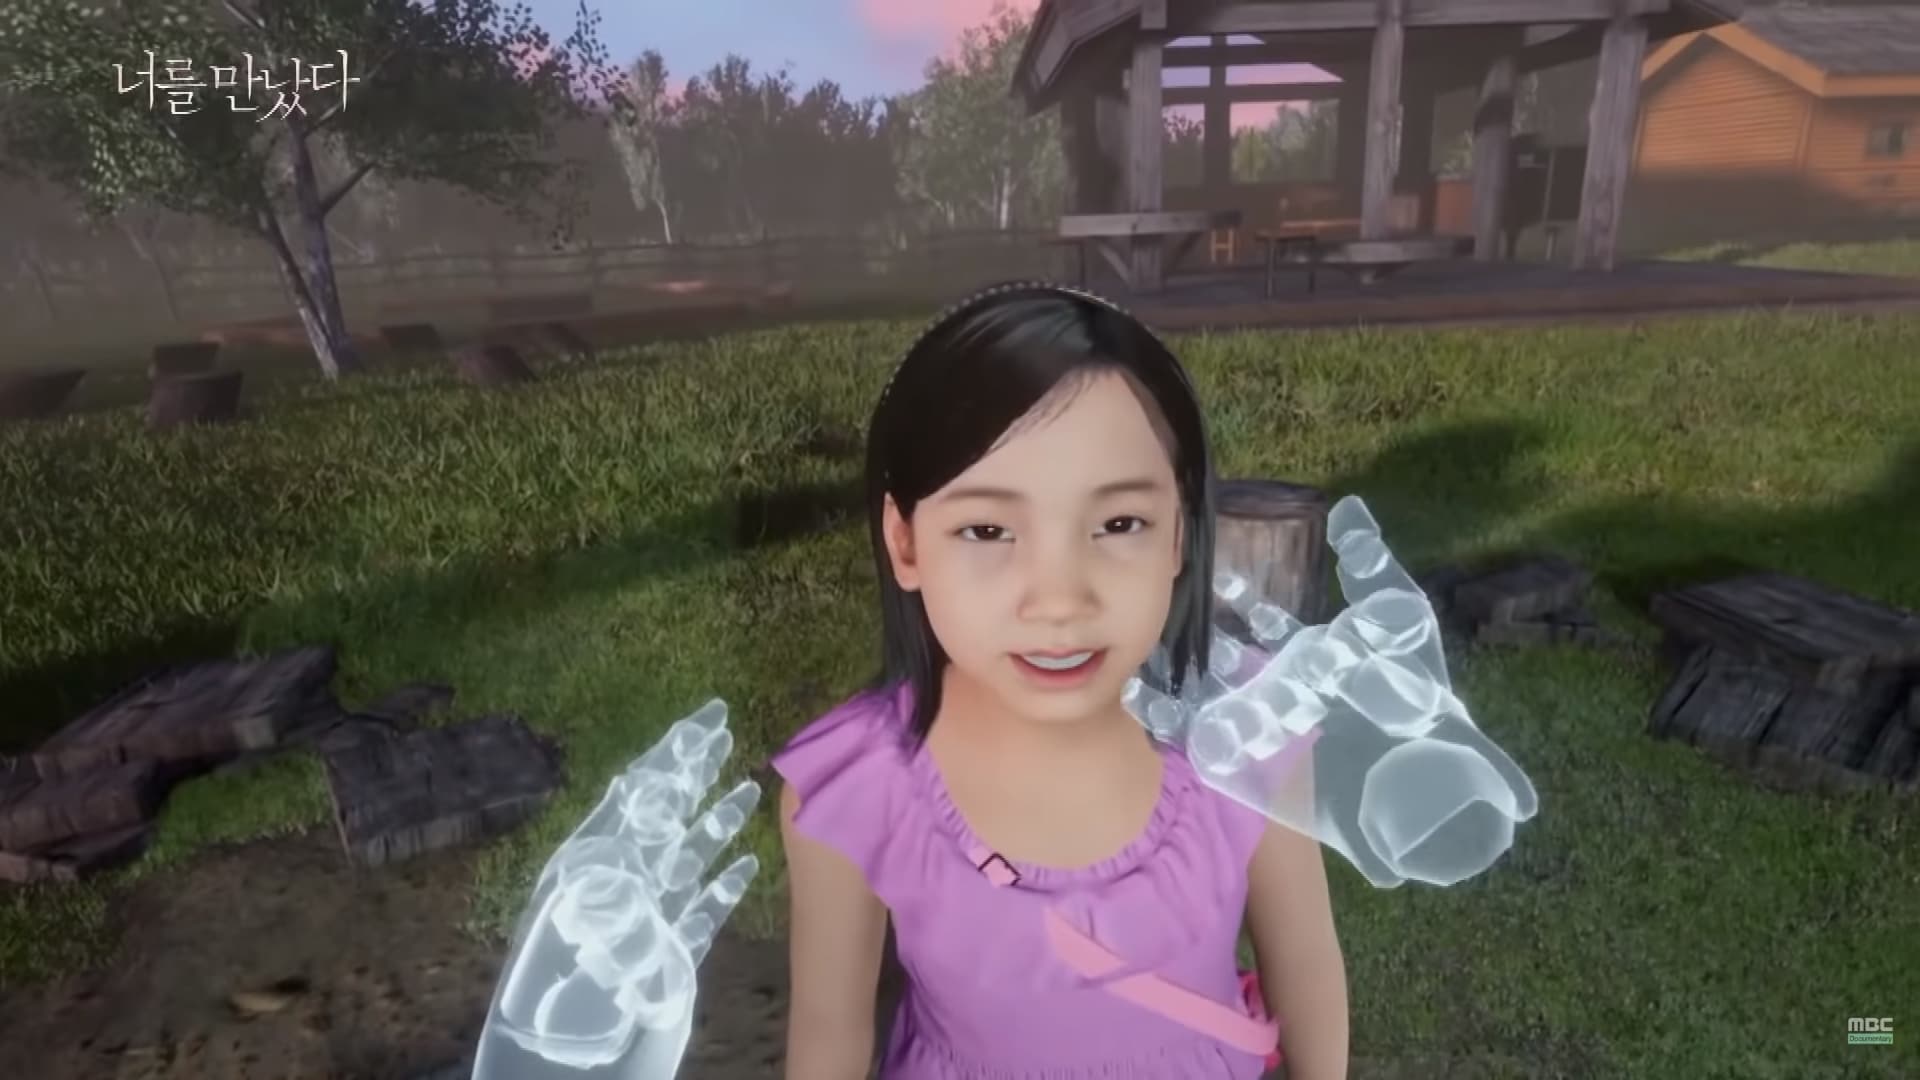 VR-recreates-dead-child